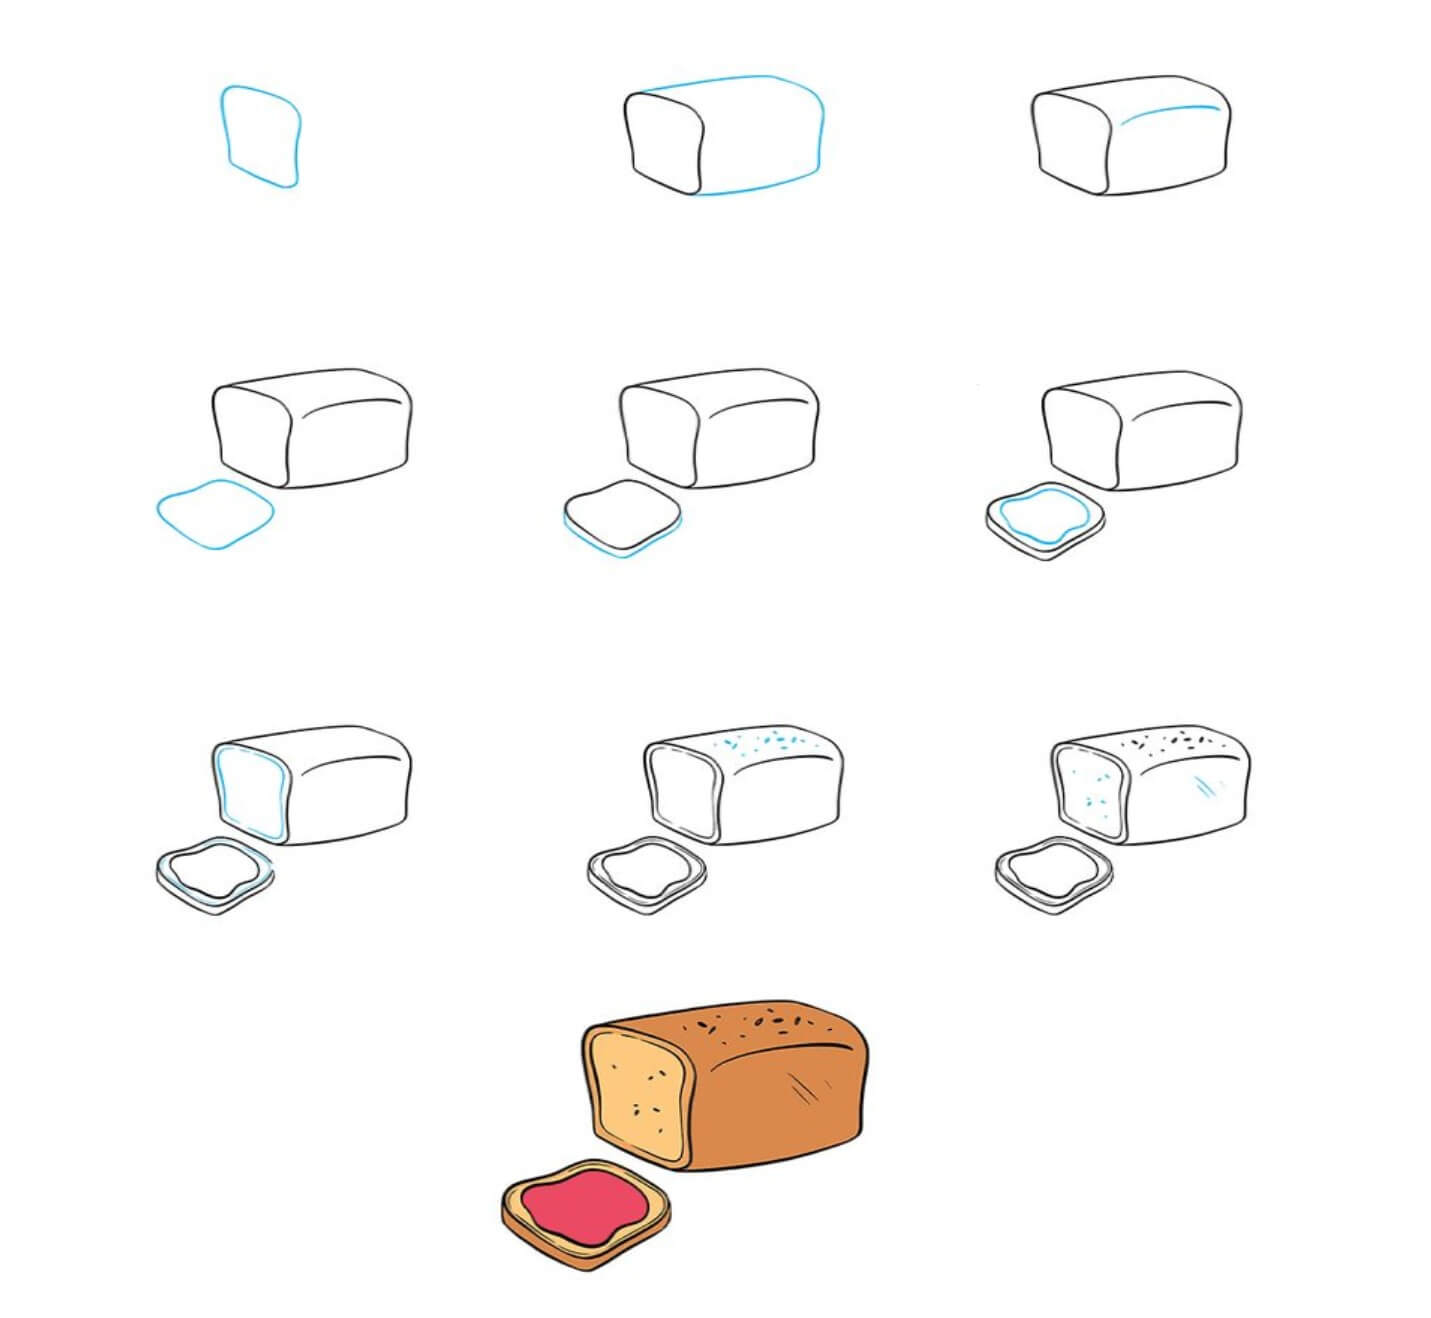 Süsses Brot zeichnen ideen